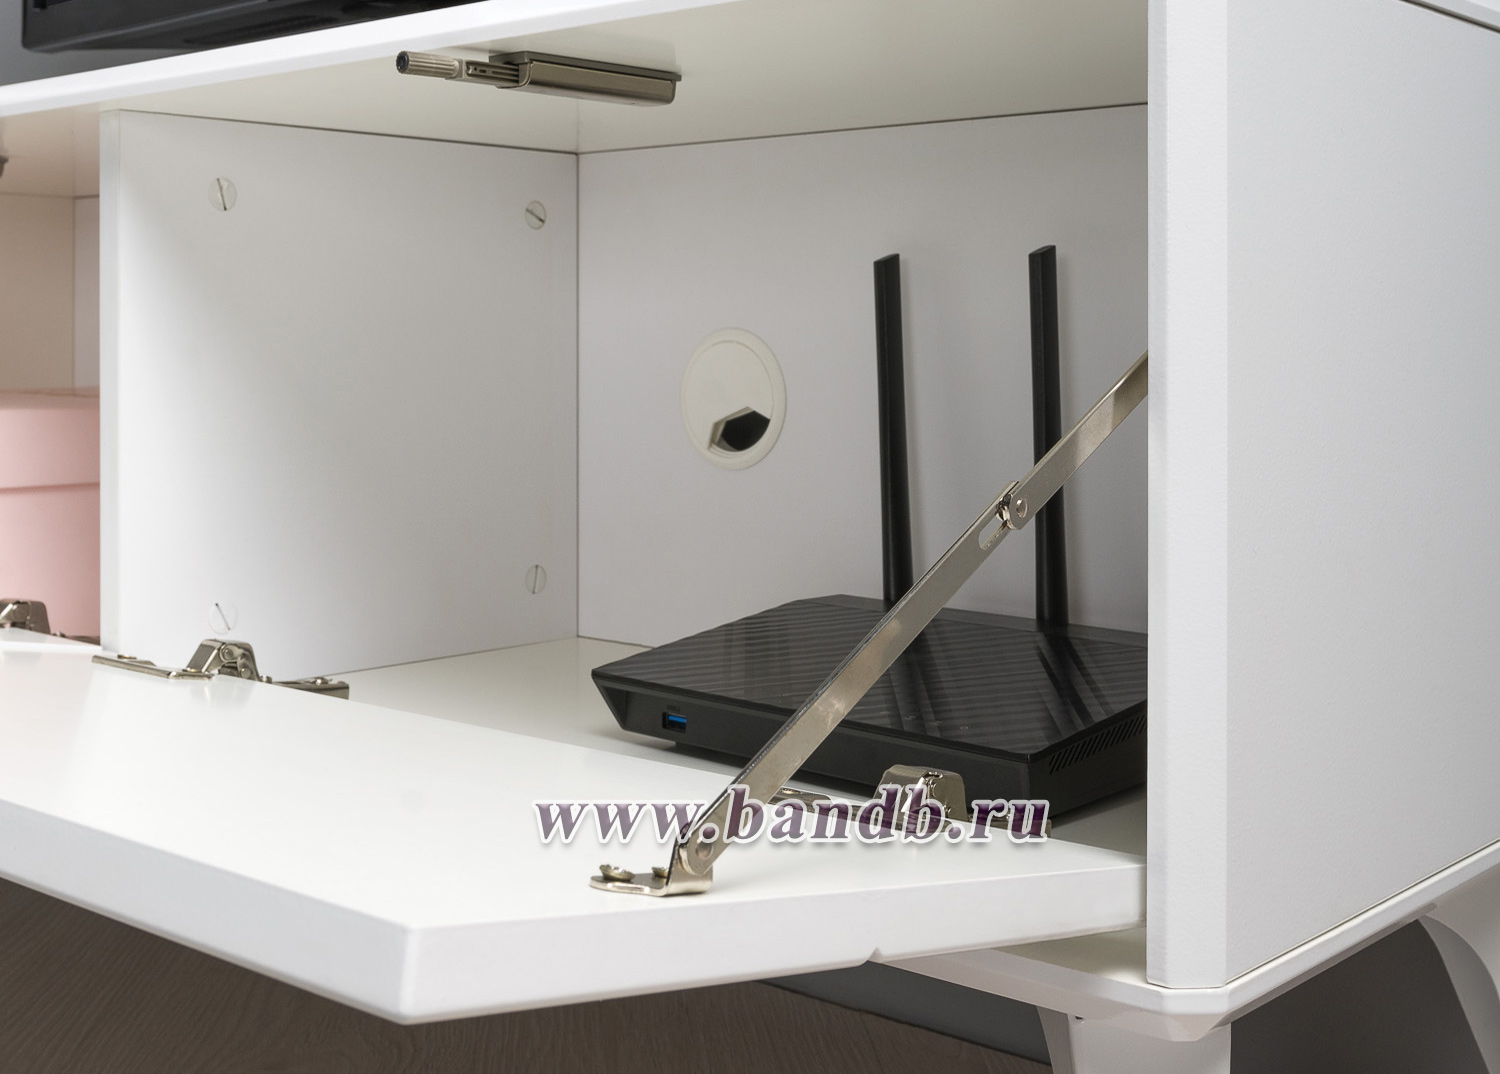 Мебель для спальни Валенсия: шкаф, кровать и ТВ-тумба цвет белый шагрень Картинка № 12